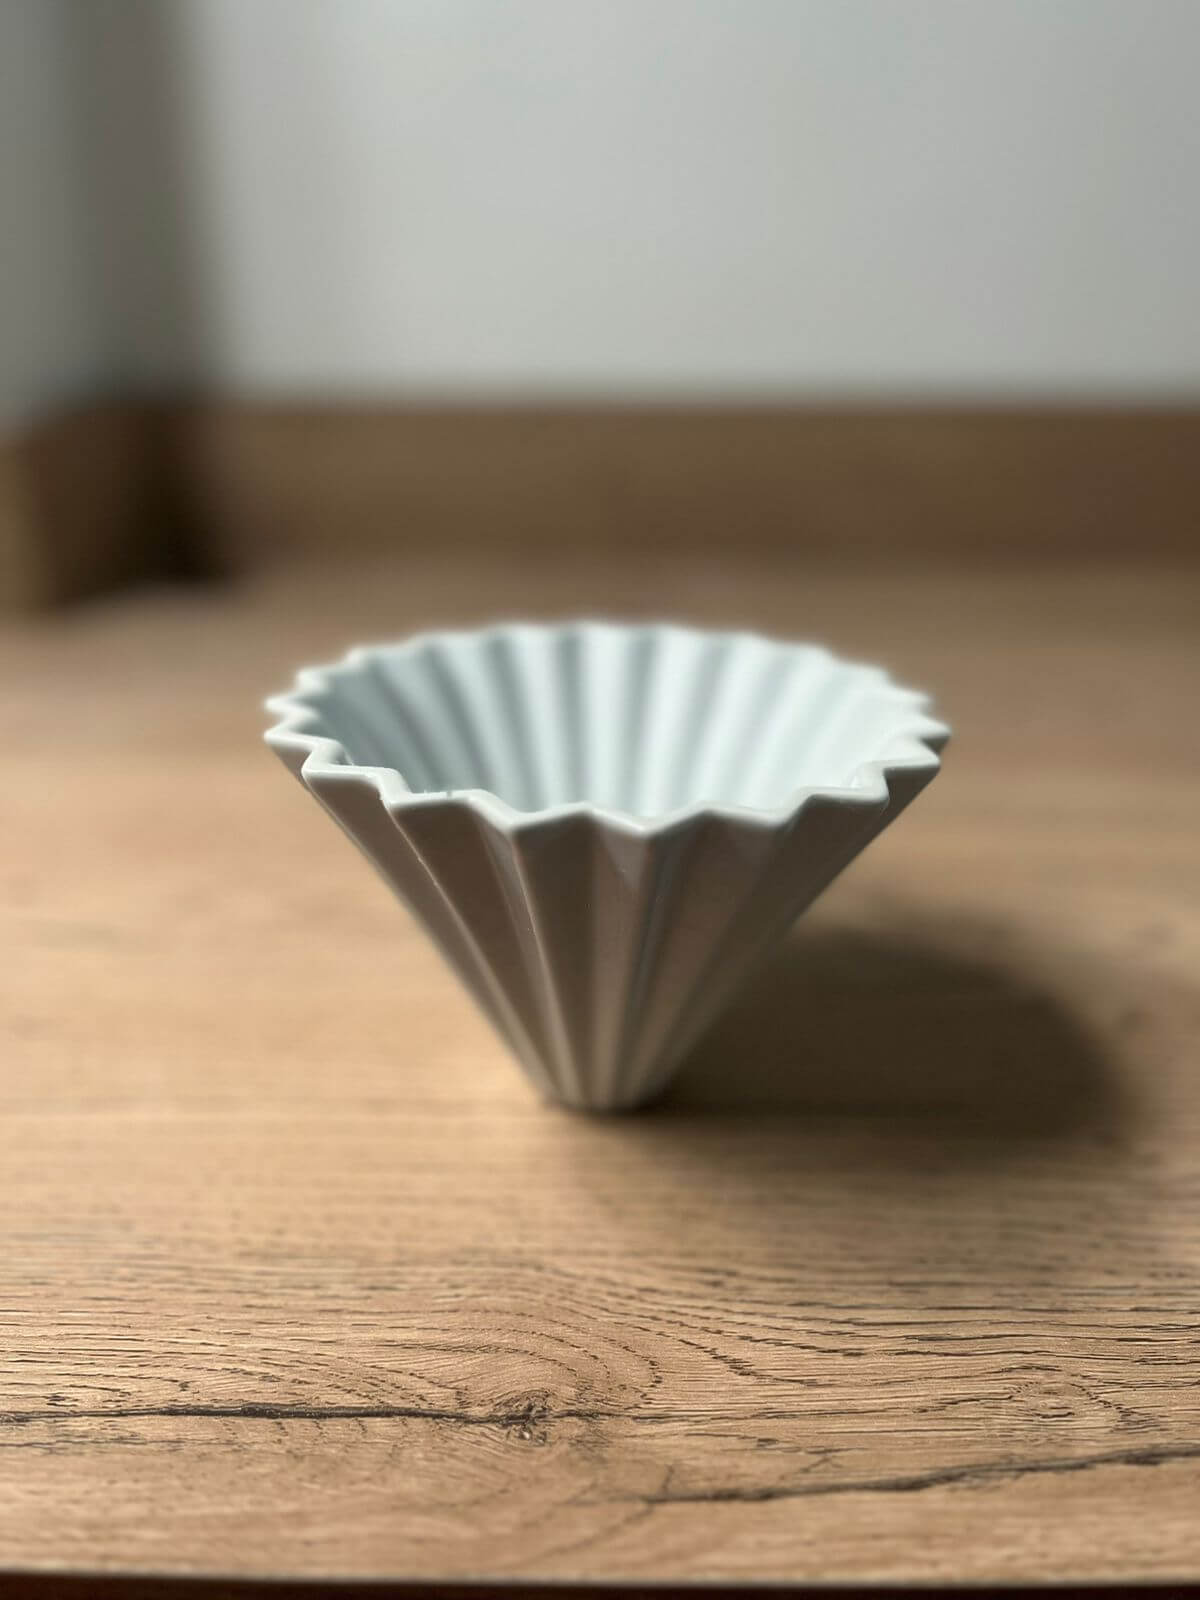 Explora la perfección del café filtrado con el V60 Origami. Diseñado para aquellos que buscan la máxima precisión y un toque artístico en su taza. Con su diseño floral y capacidad para 1-4 tazas, es la herramienta perfecta para apreciar la riqueza de cada grano.